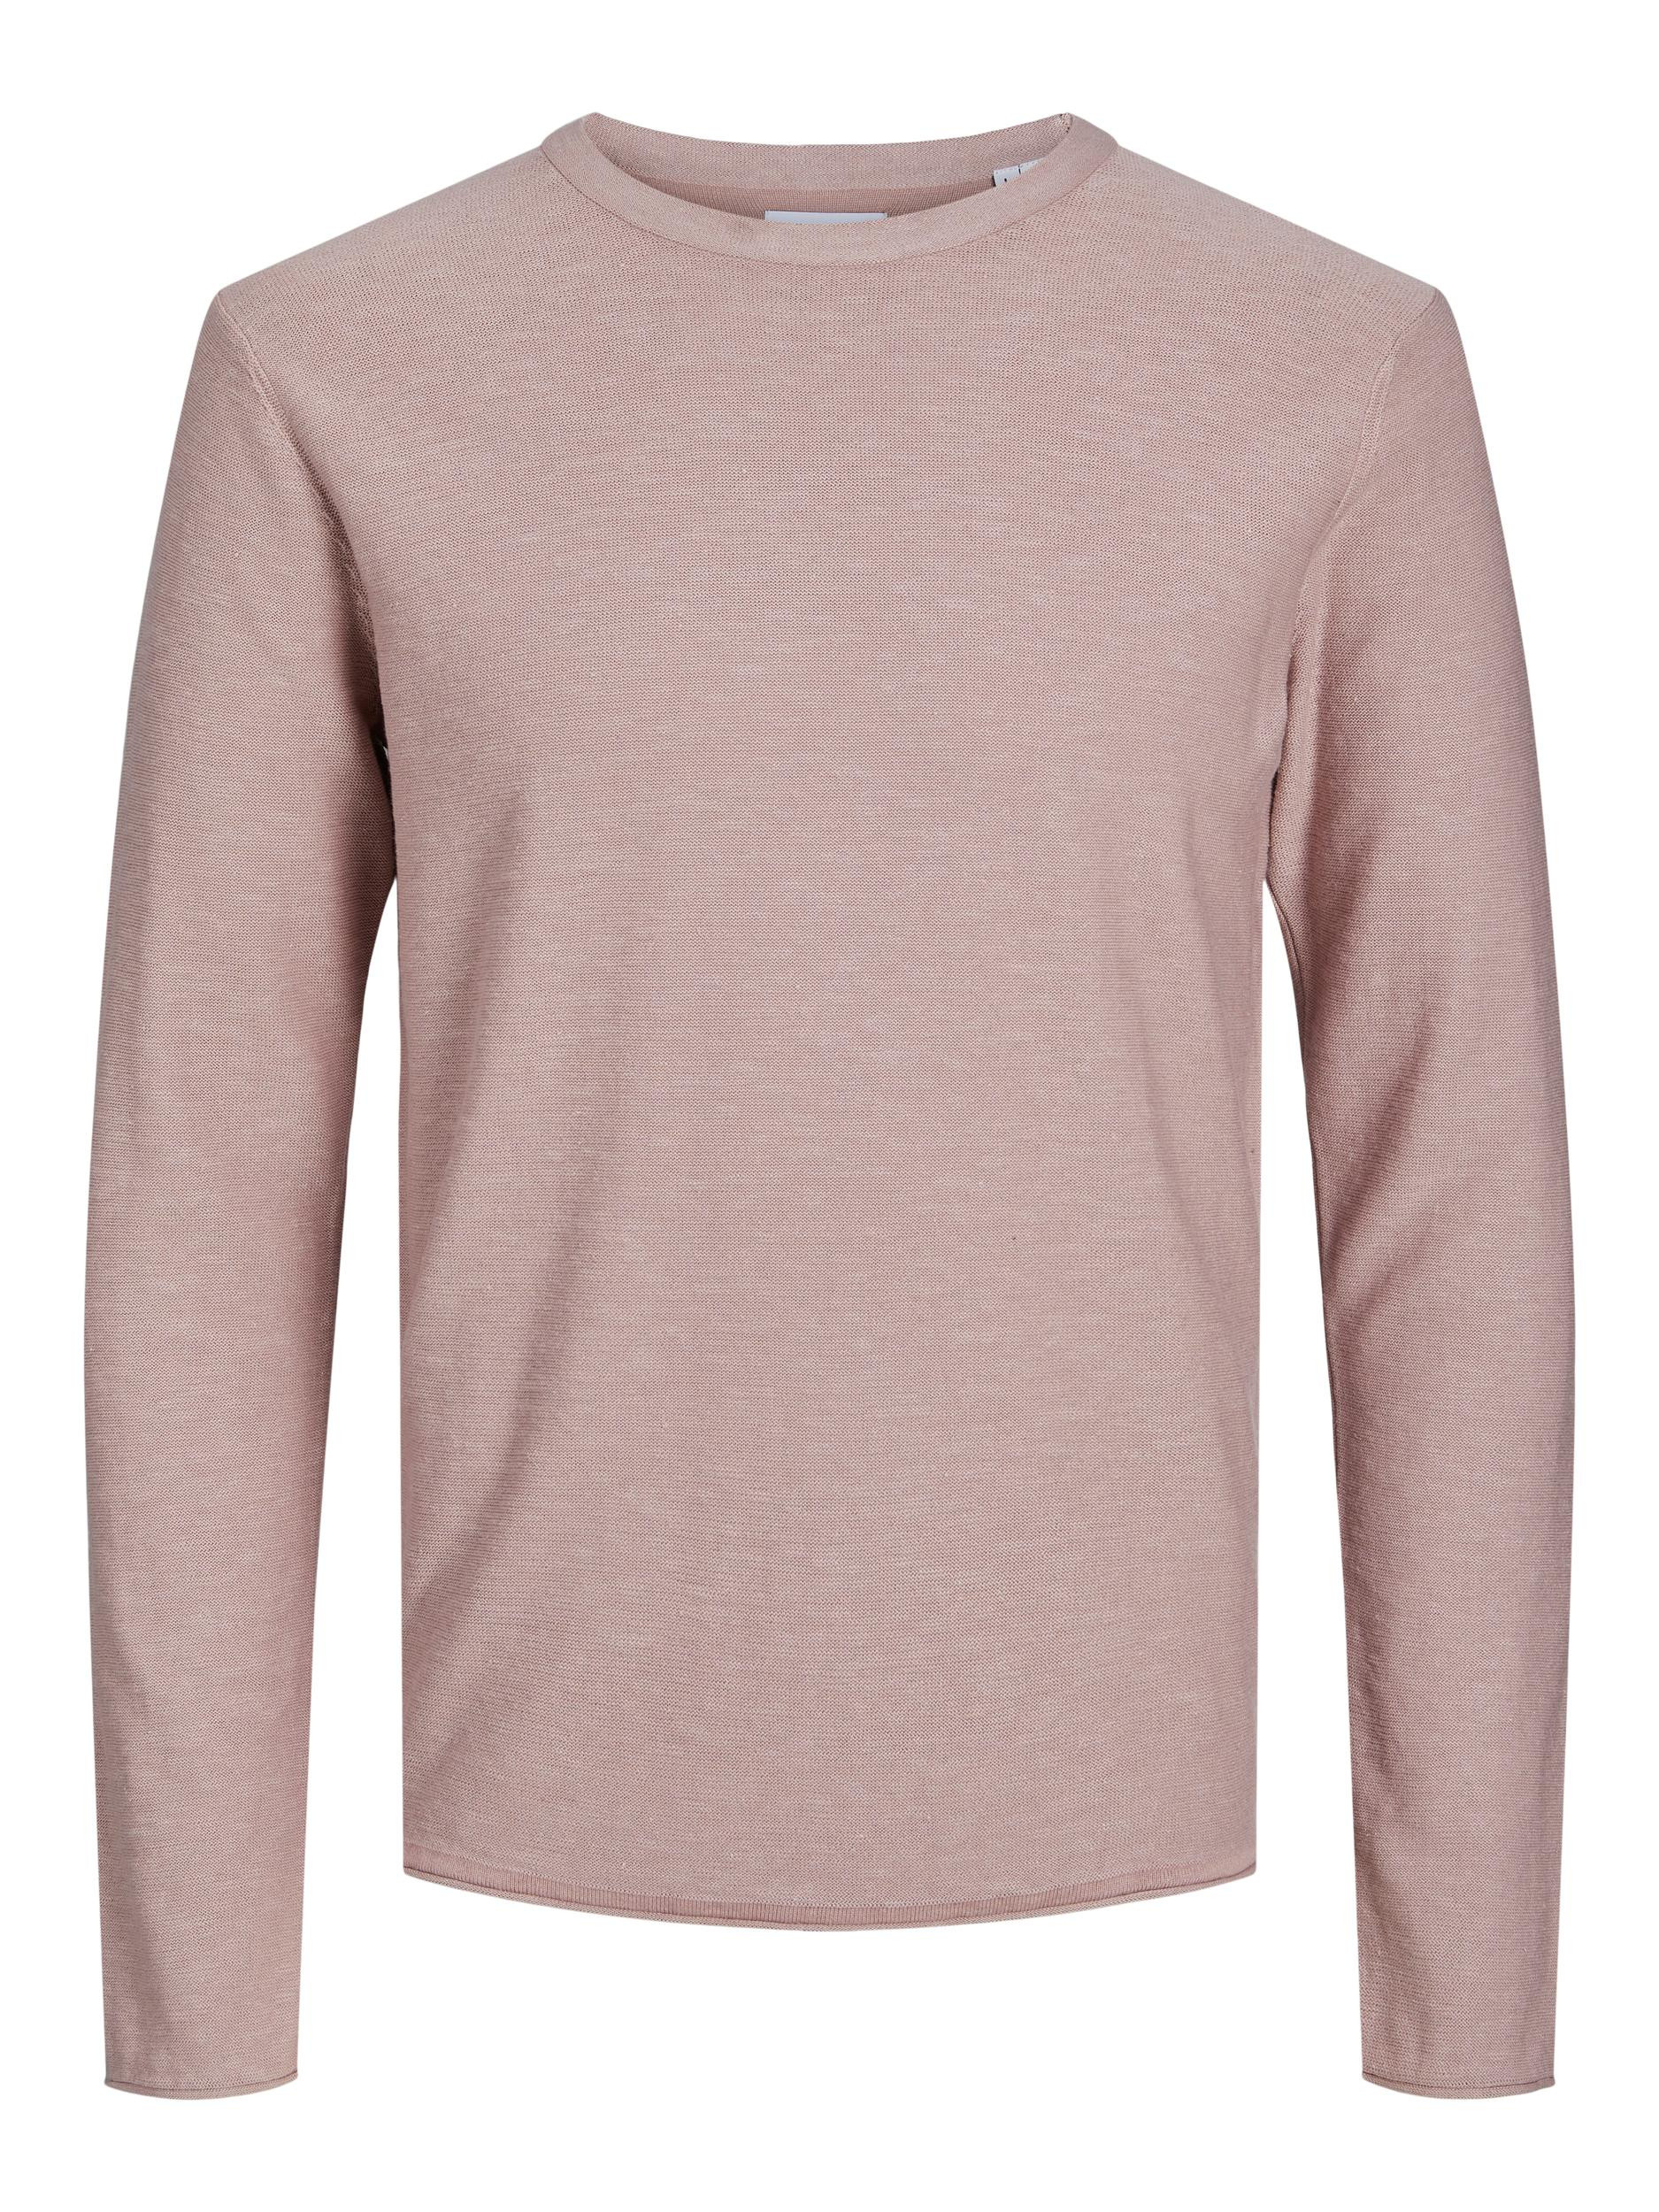 Jack & Jones - Linen blend pullover, Antique Pink, large image number 0